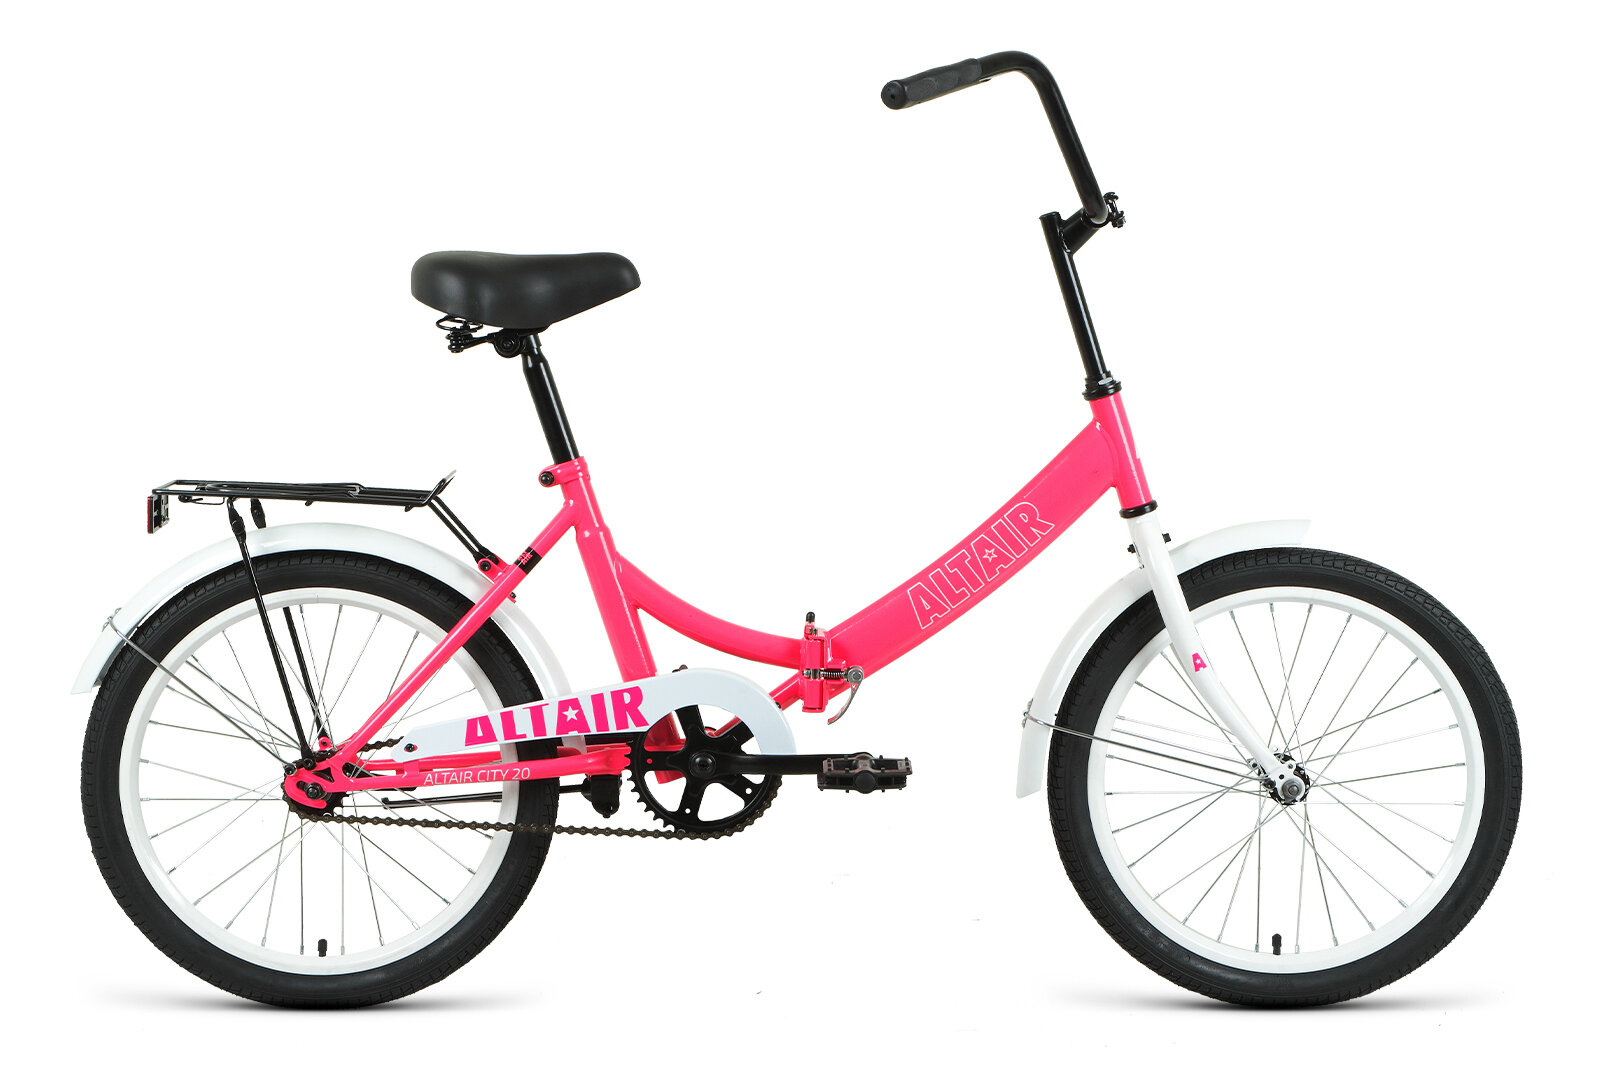 Складной велосипед Altair City 20, год 2021, цвет Розовый-Белый, ростовка 14